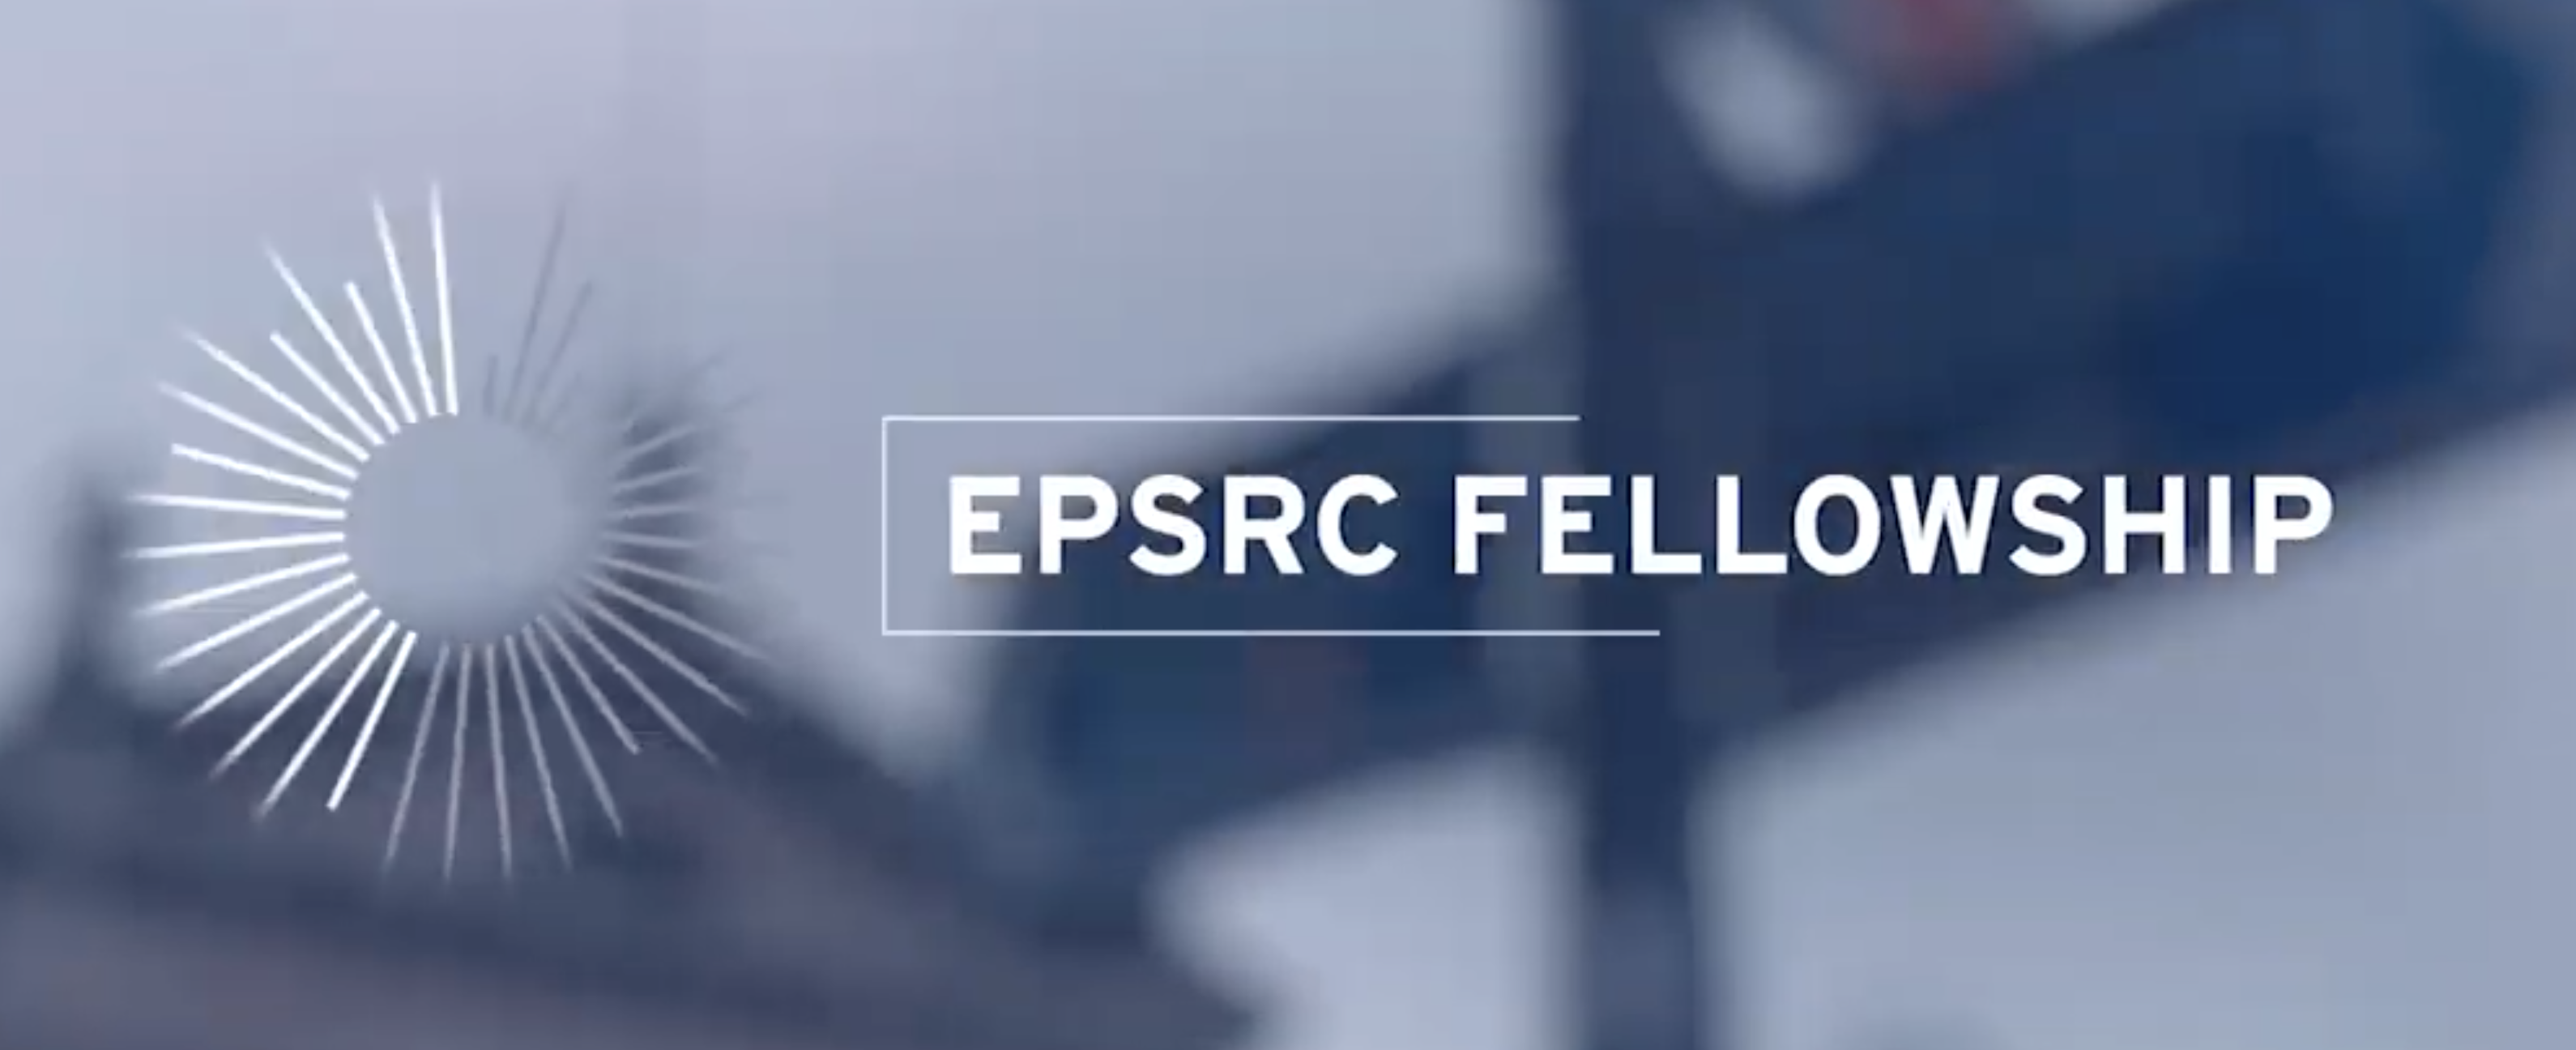 EPSRC FELLOWSHIP